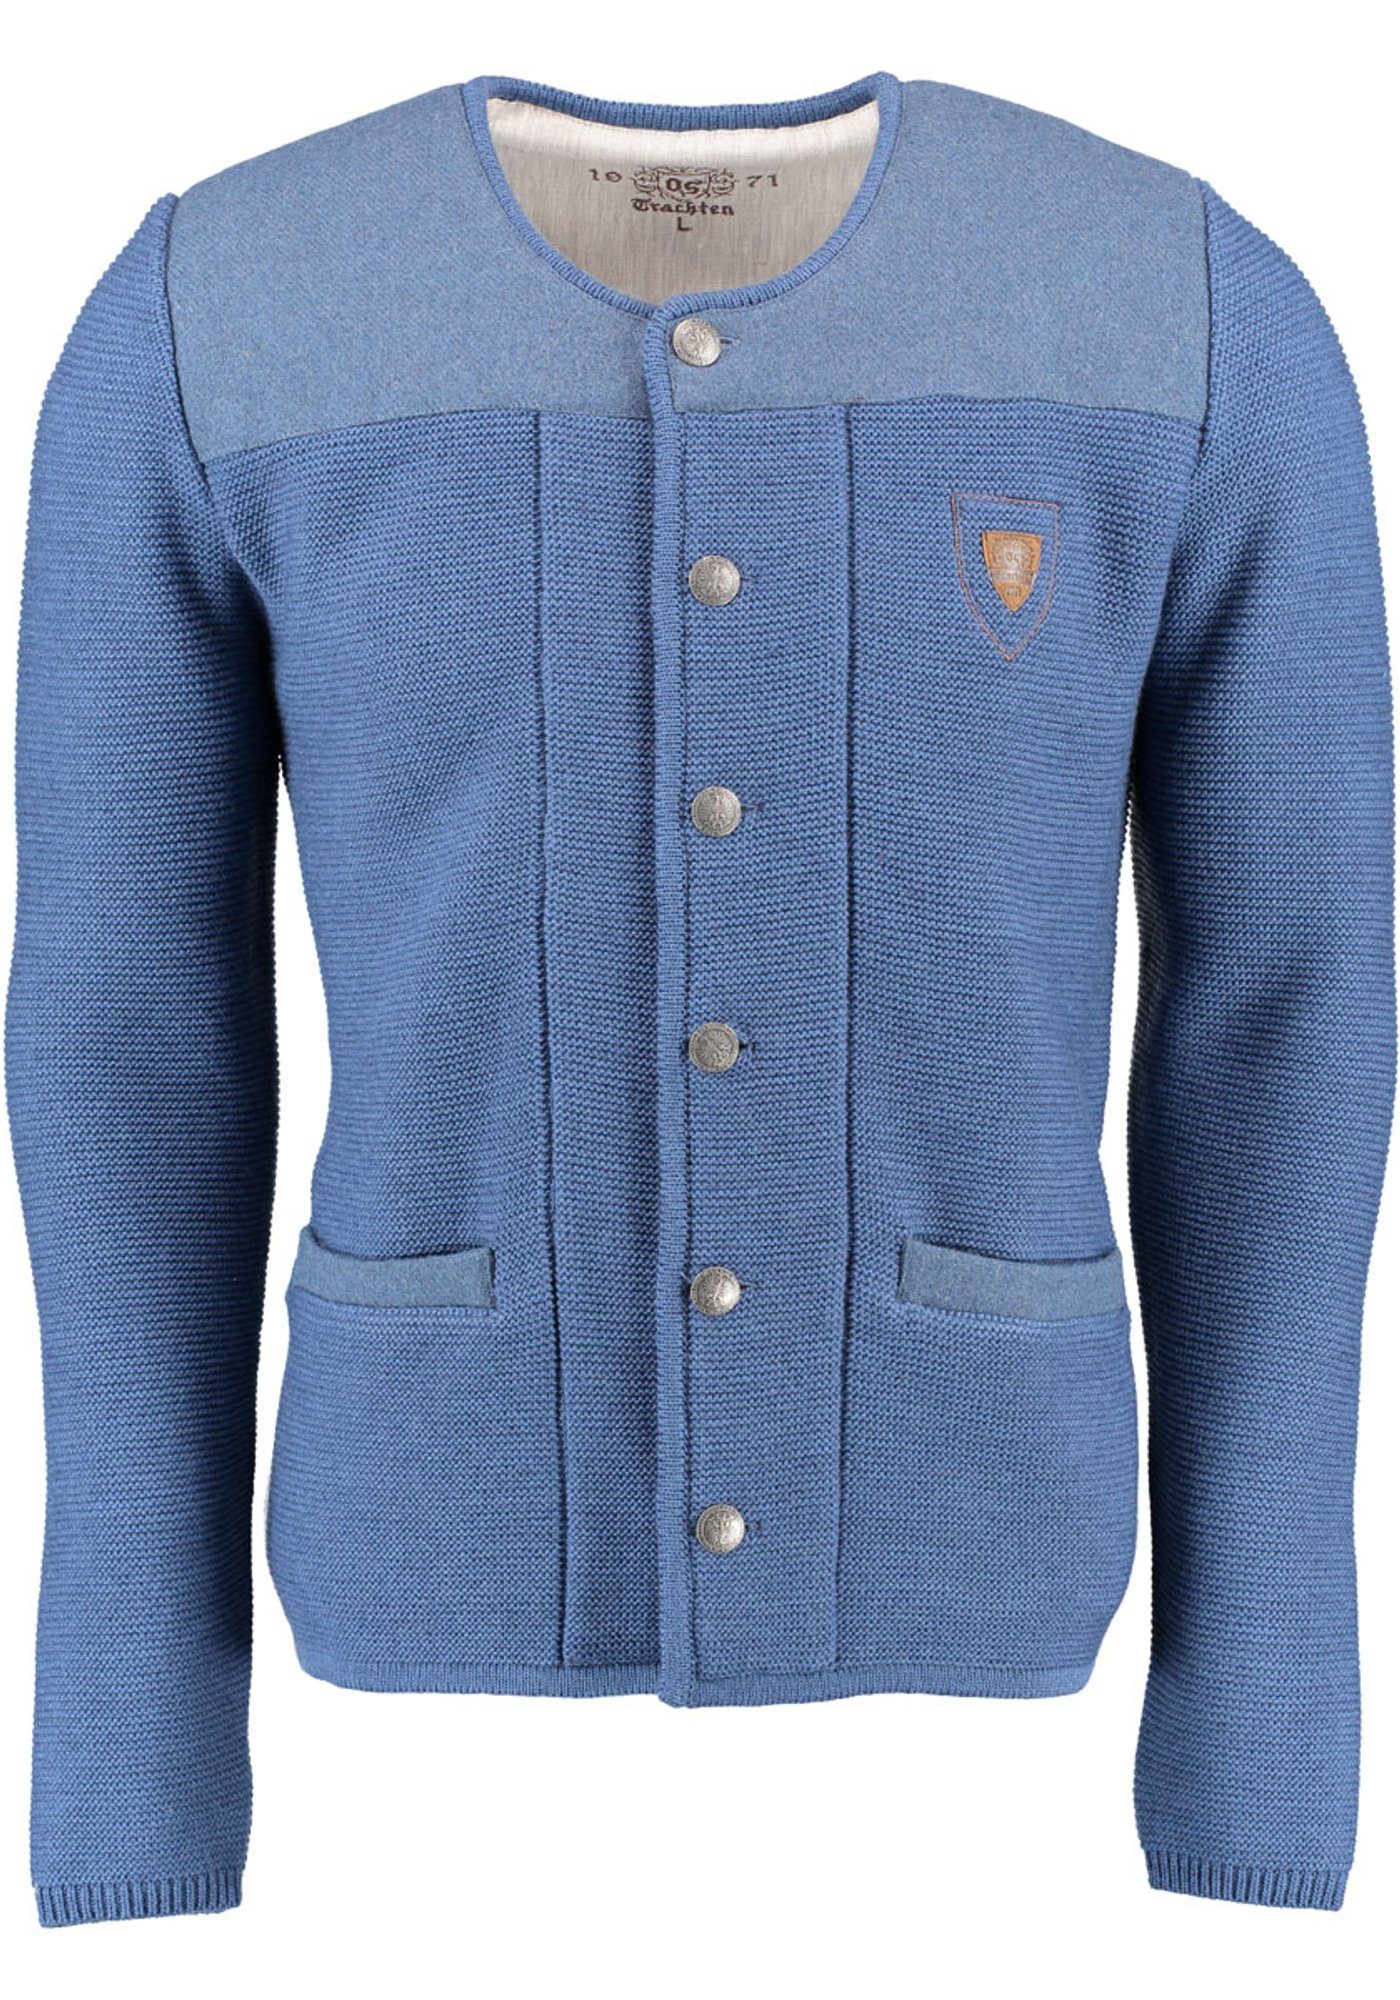 OS-Trachten Strickjacke Scava und Trachten-Wolljacke Emblem mit der jeans auf Brust Rundhalsausschnitt